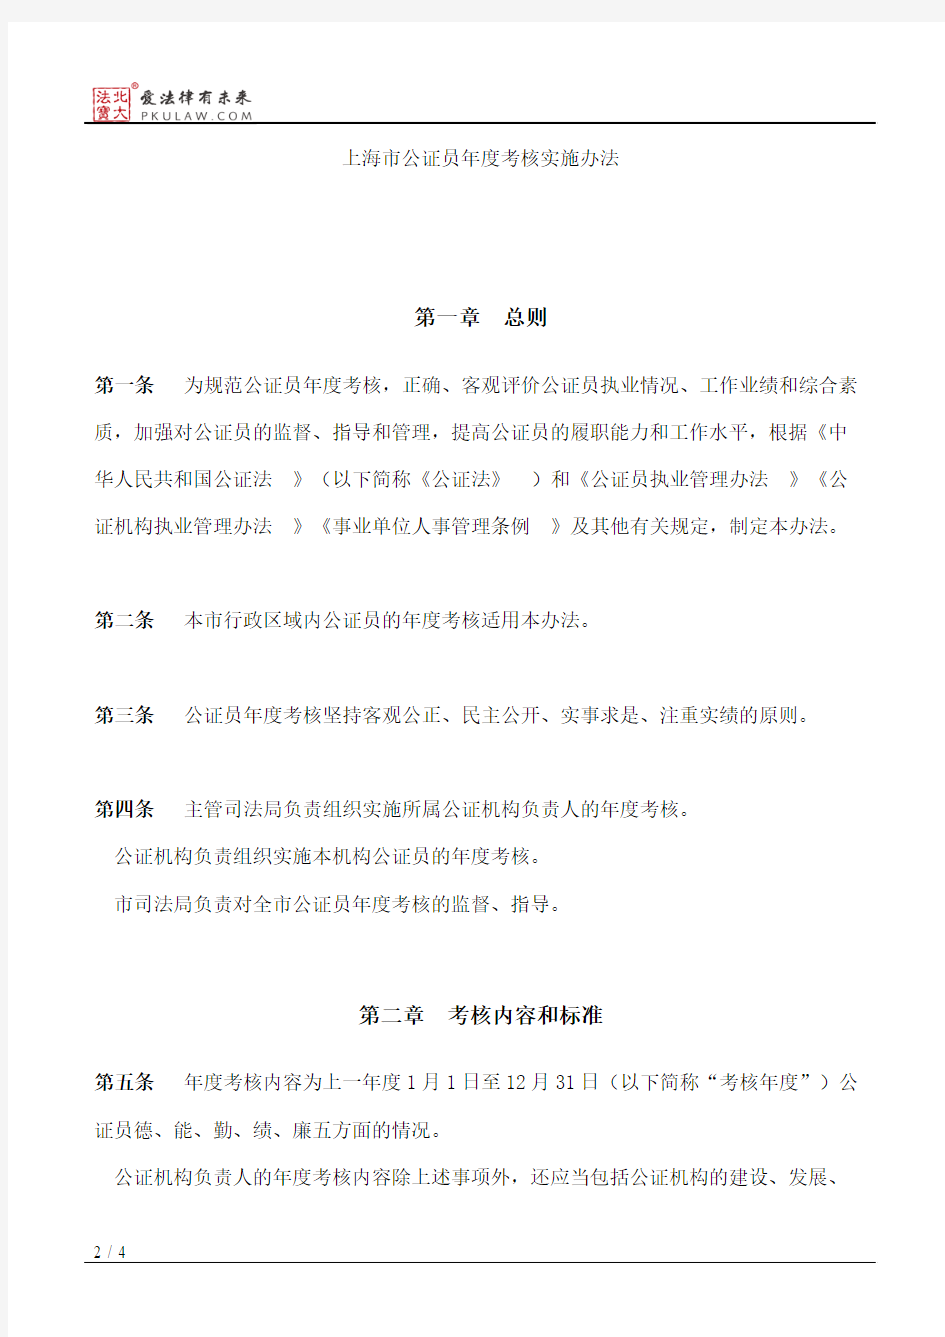 上海市司法局关于印发《上海市公证员年度考核实施办法》的通知